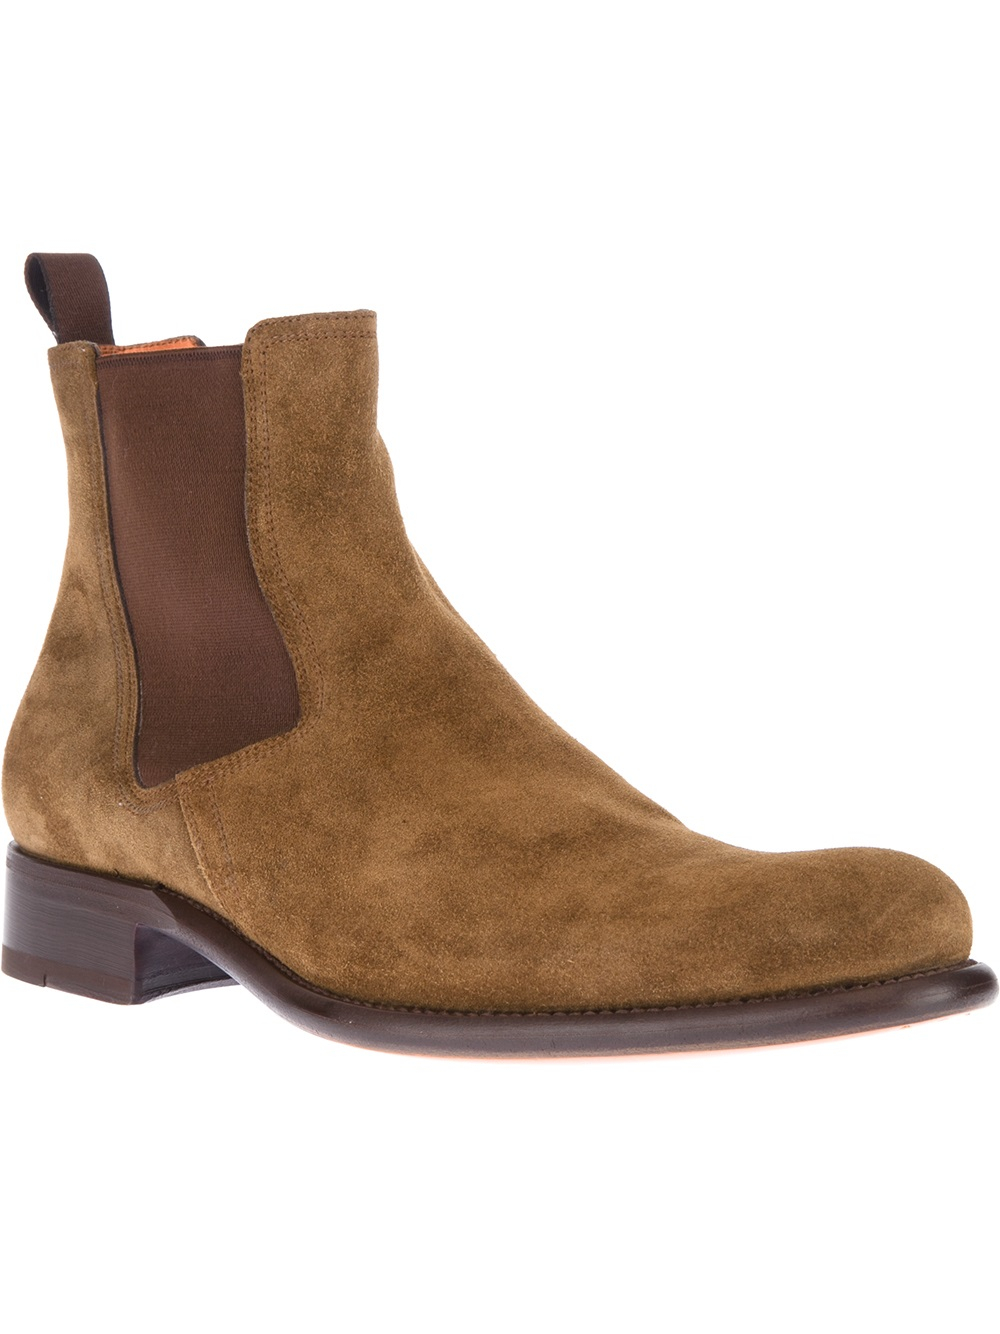 Lyst - Santoni Casual Boot in Brown for Men